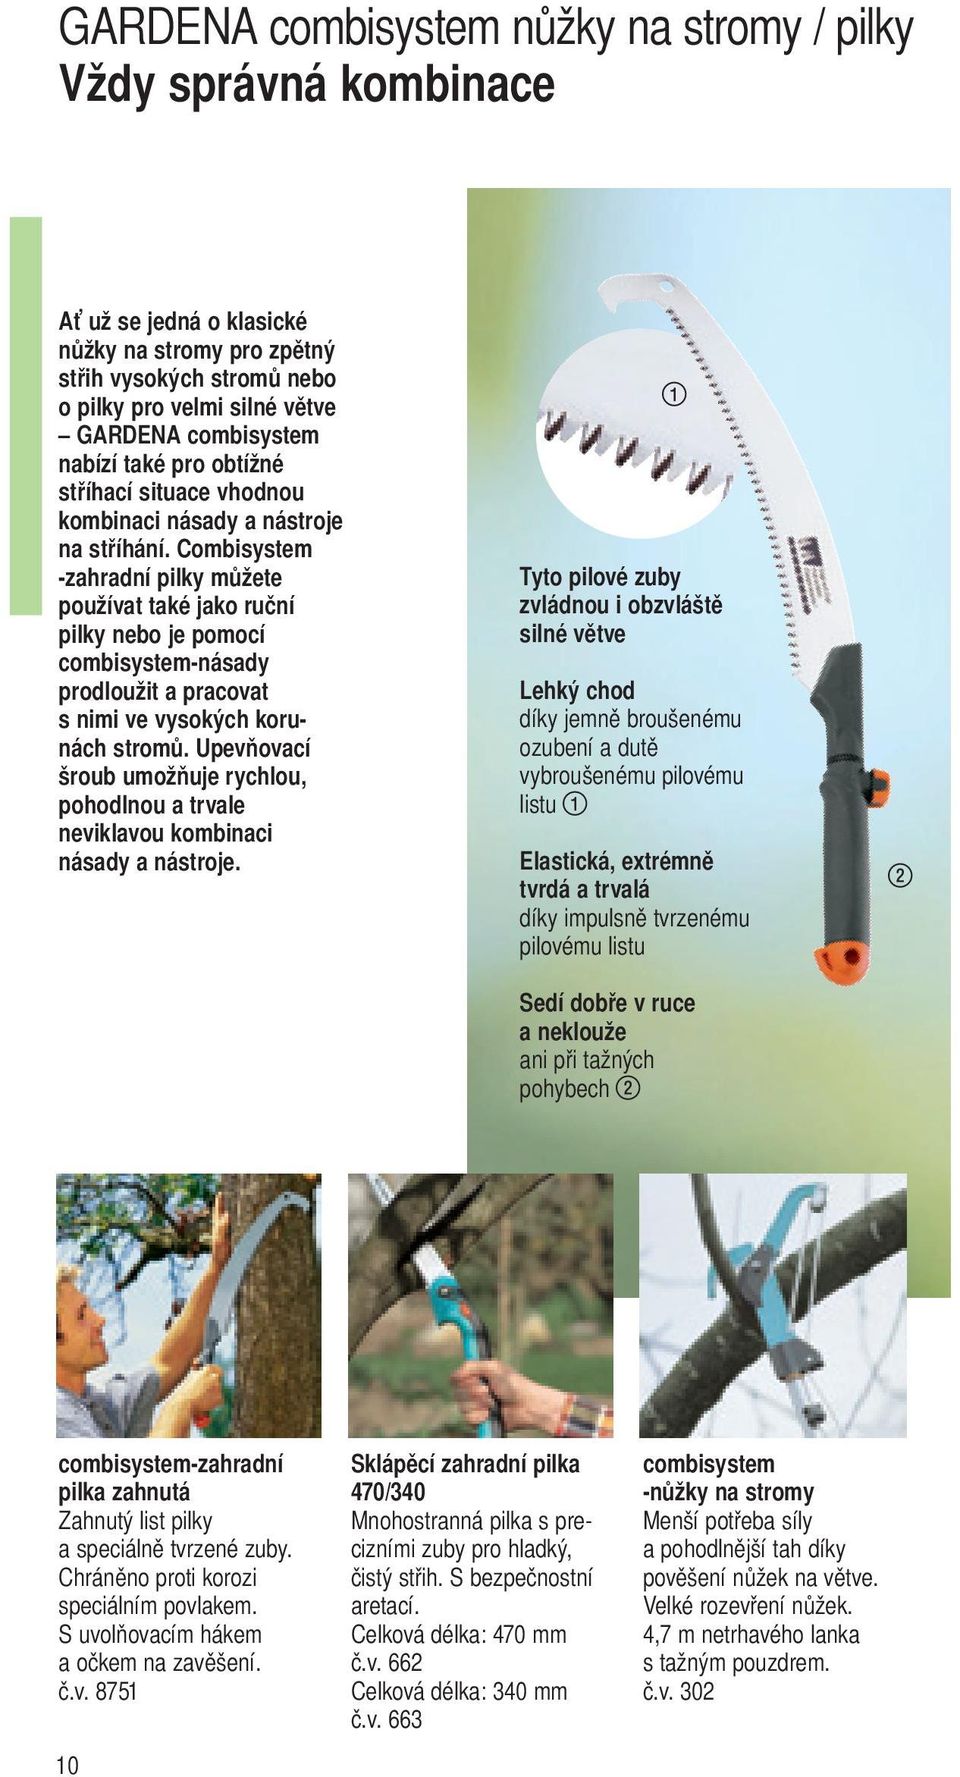 Combisystem -zahradní pilky můžete používat také jako ruční pilky nebo je pomocí combisystem-násady prodloužit a pracovat s nimi ve vysokých korunách stromů.